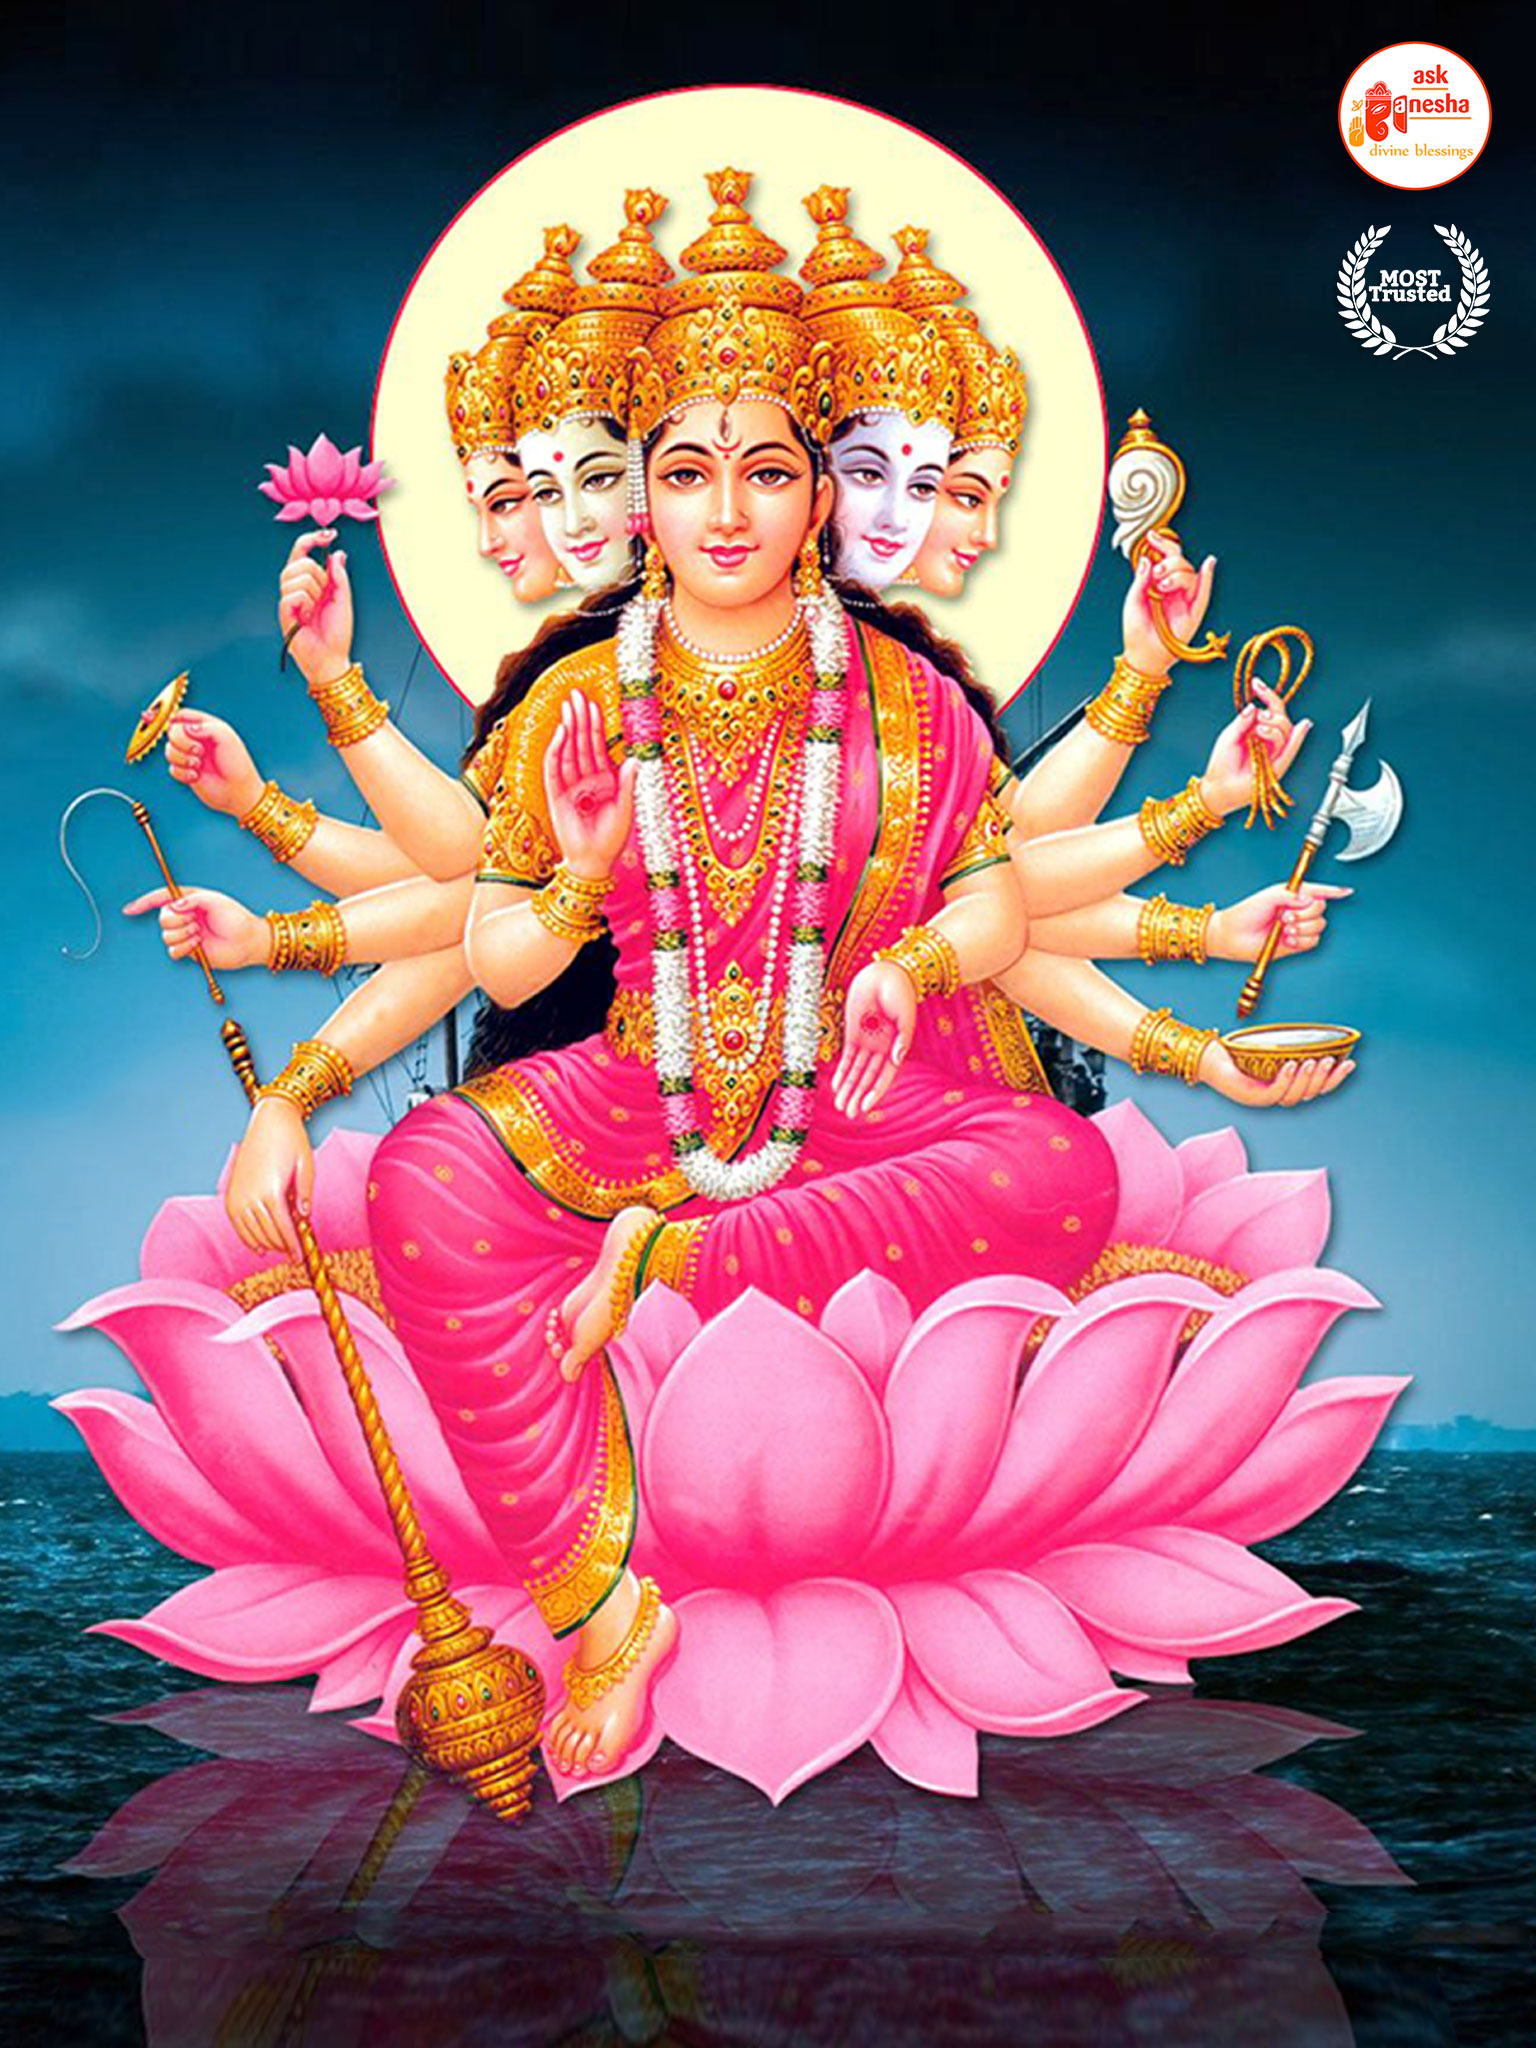 Maa Gayatri Wallpapers [HD] | Download Free Images on Askganesha